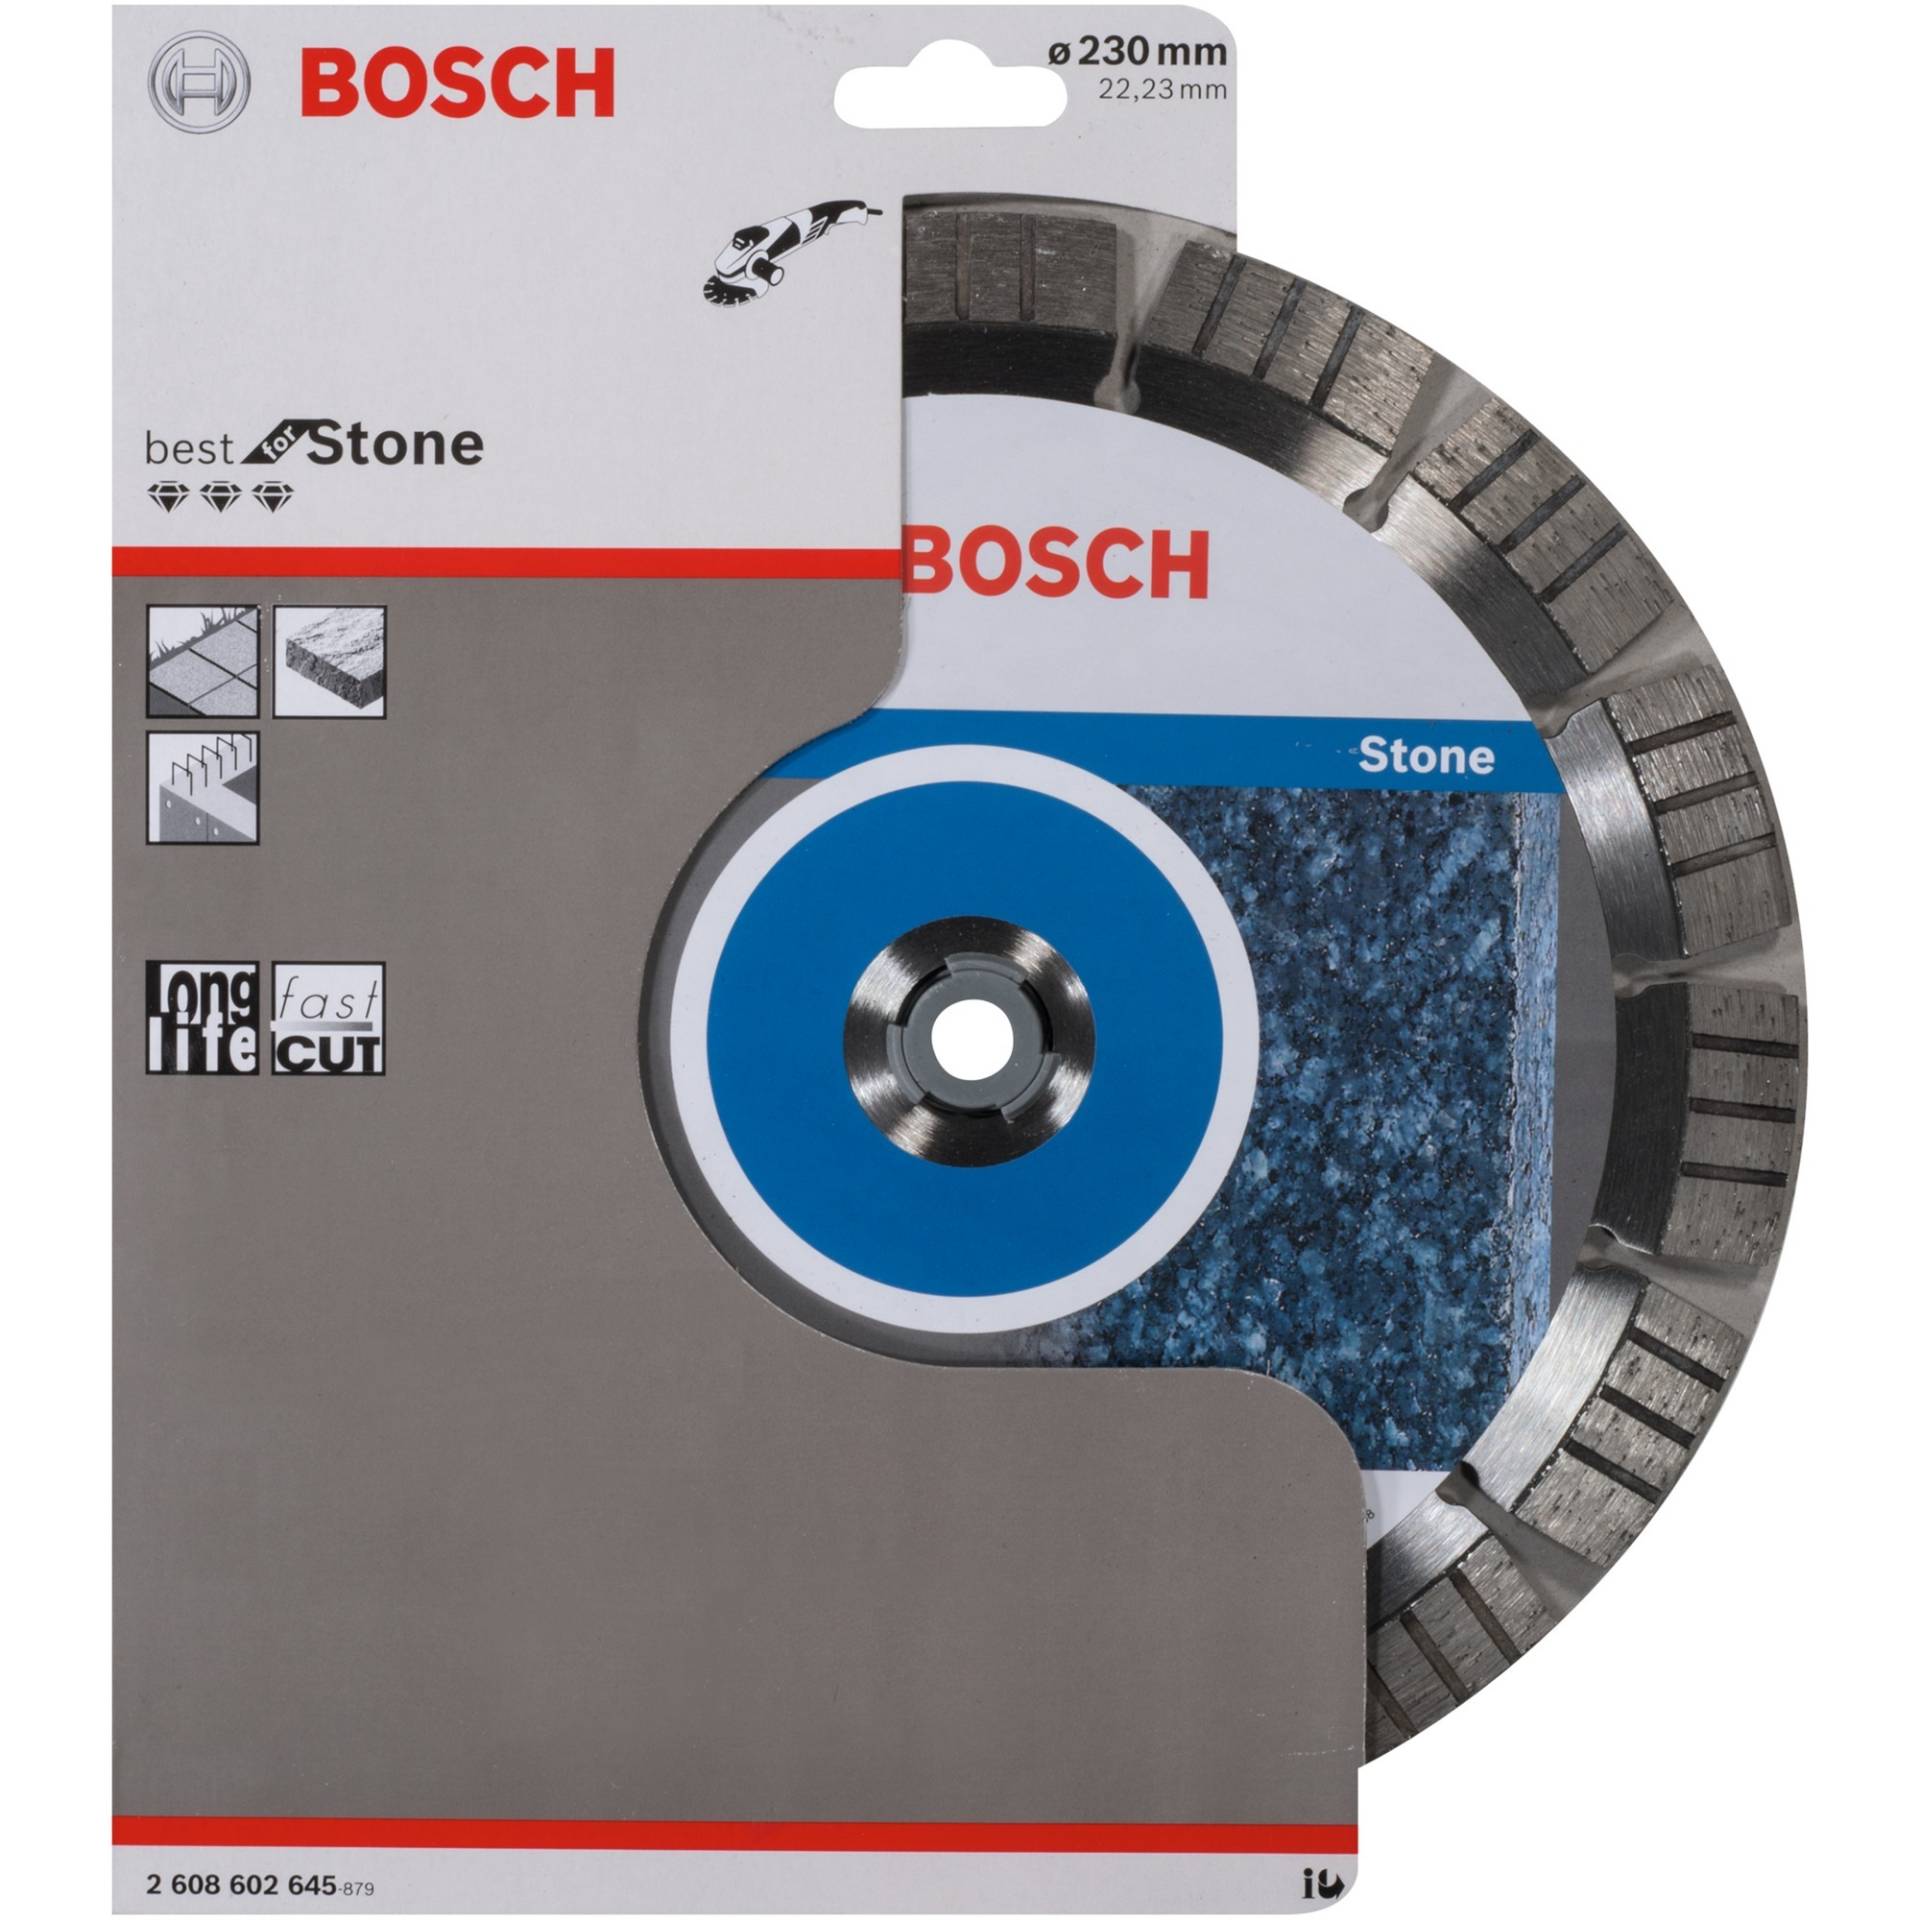 Diamanttrennscheibe Best for Stone, Ø 230mm von Bosch